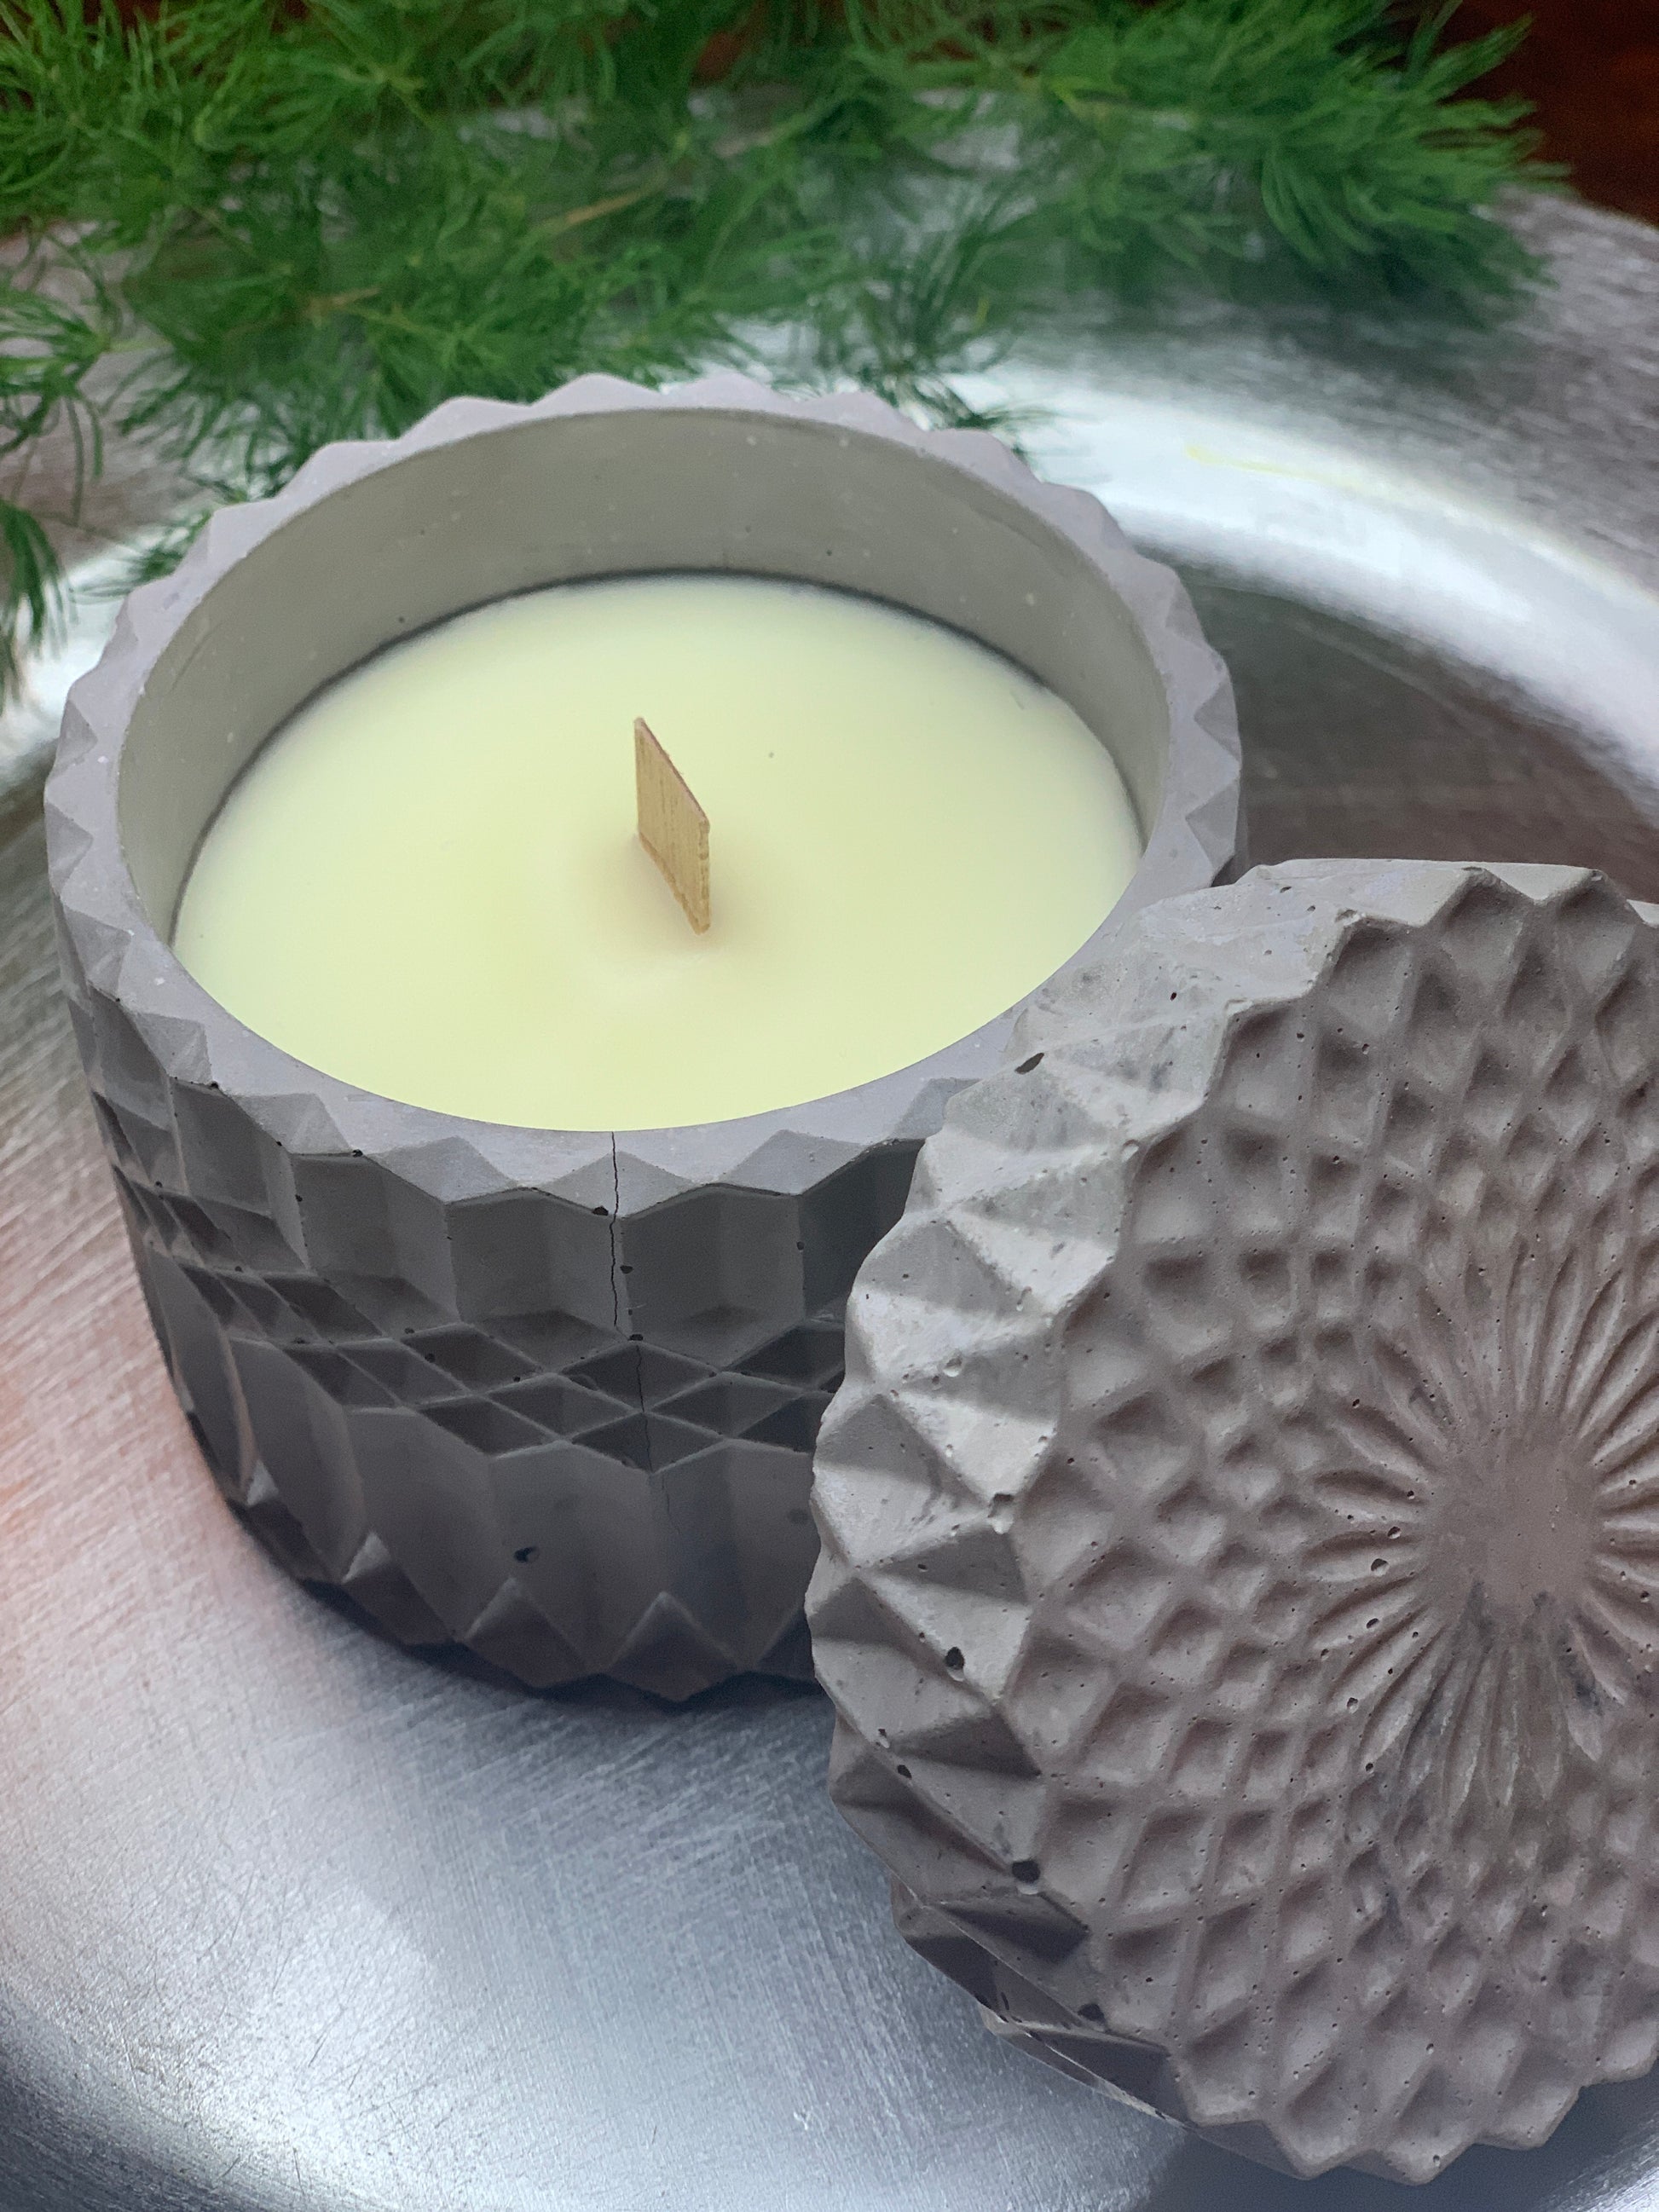 candela Pandora in cemento e cera di soia profumata con oli essenziali naturali colore grigio